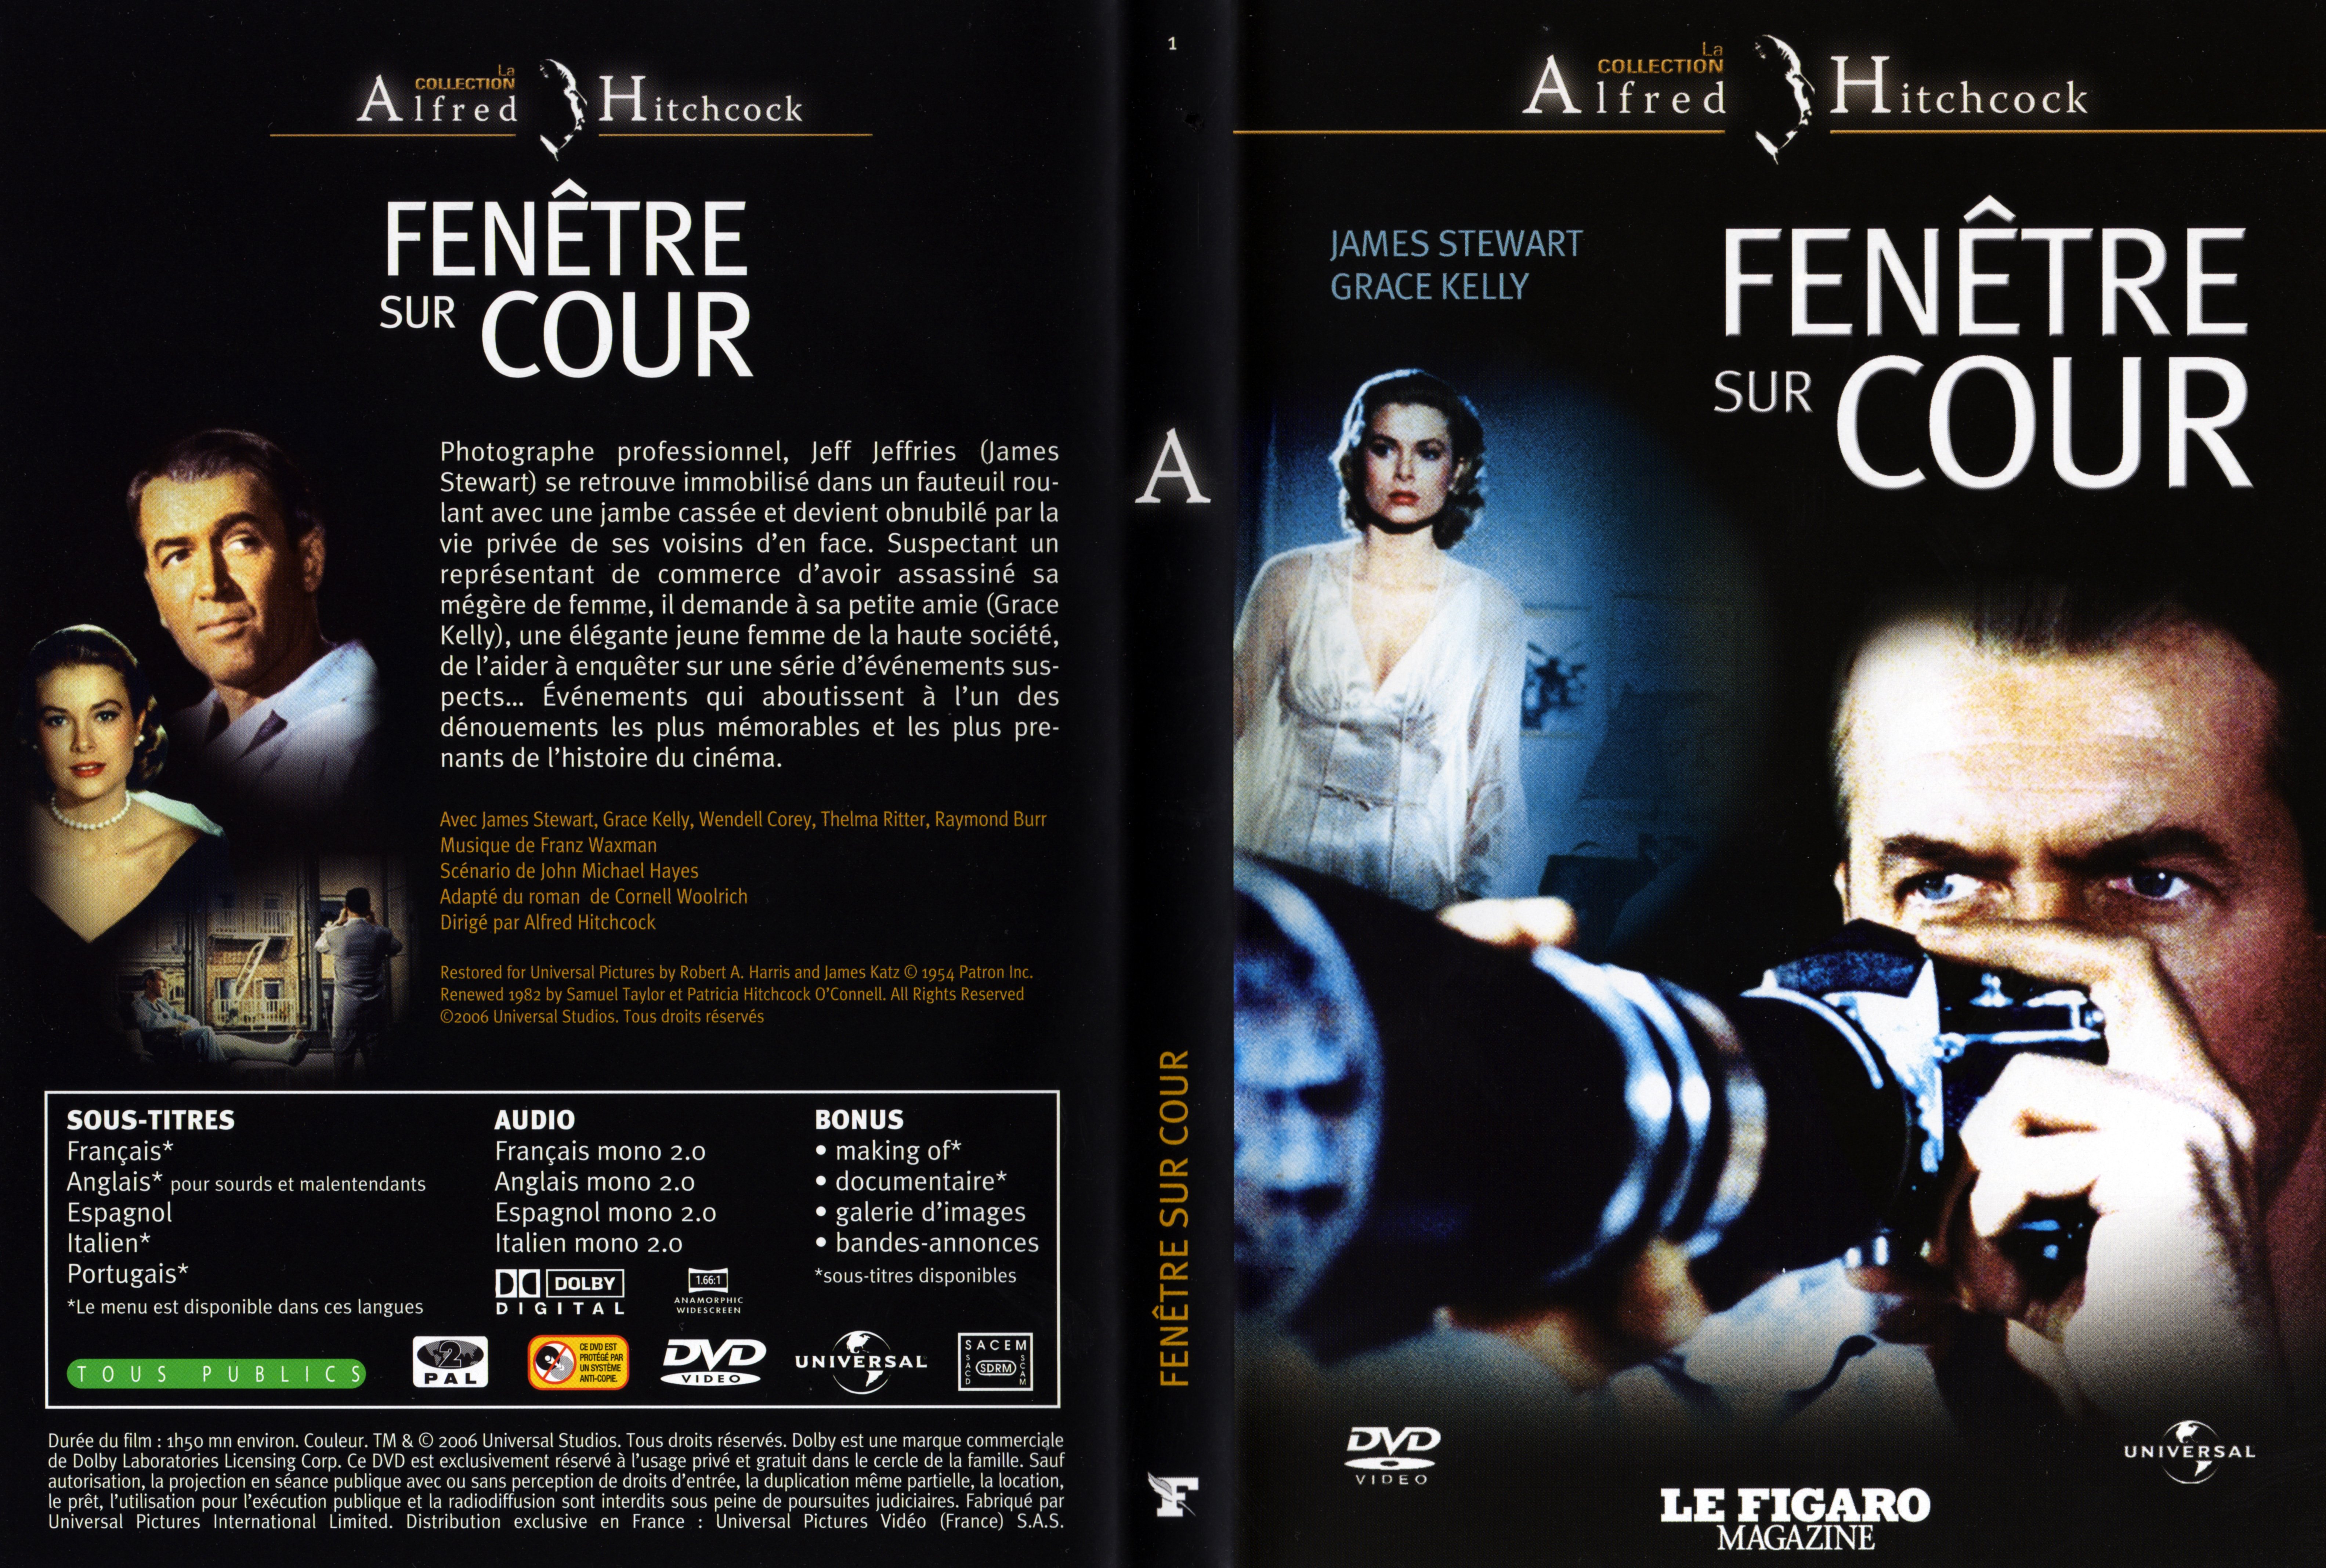 Jaquette DVD Fenetre sur cour (Hitchcock) v2